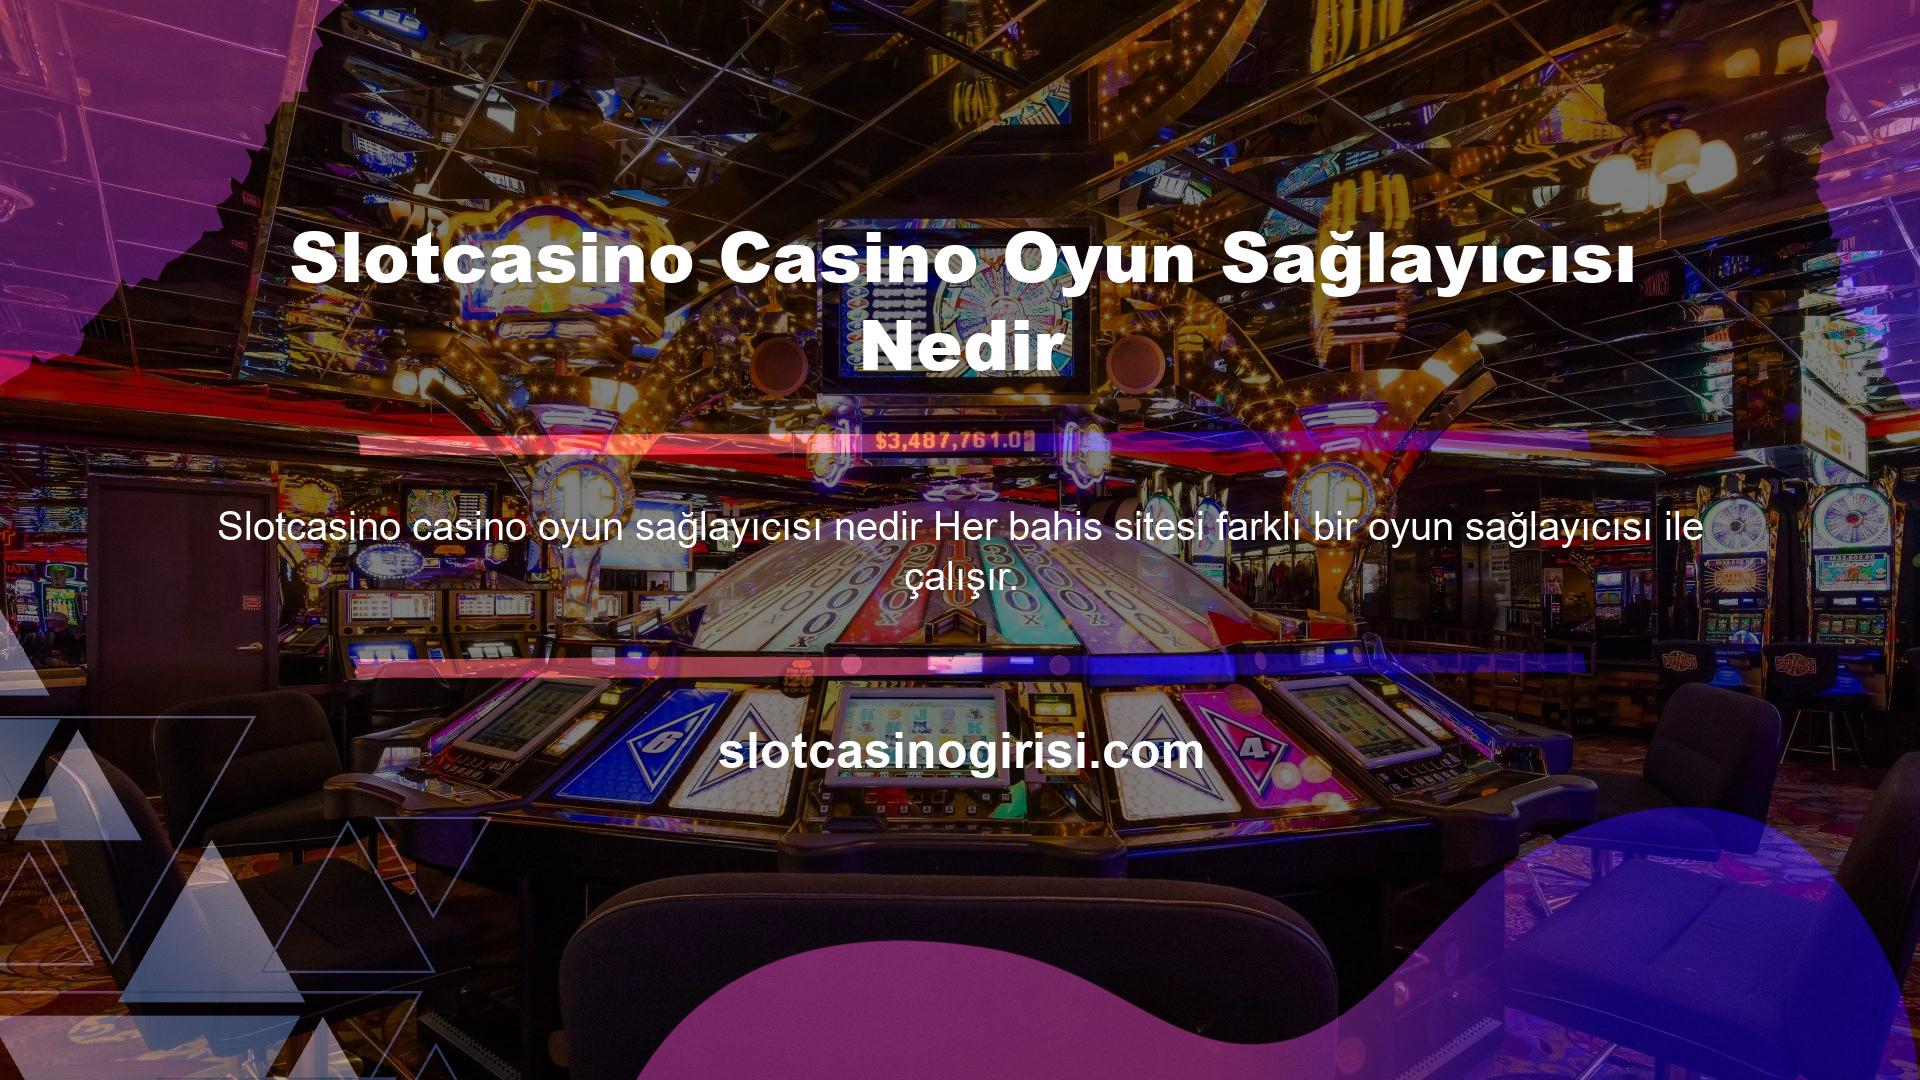 Slotcasino Casino Oyun Sağlayıcısı Nedir Soracak olursanız, tartışmasız en popüler şirket onlar